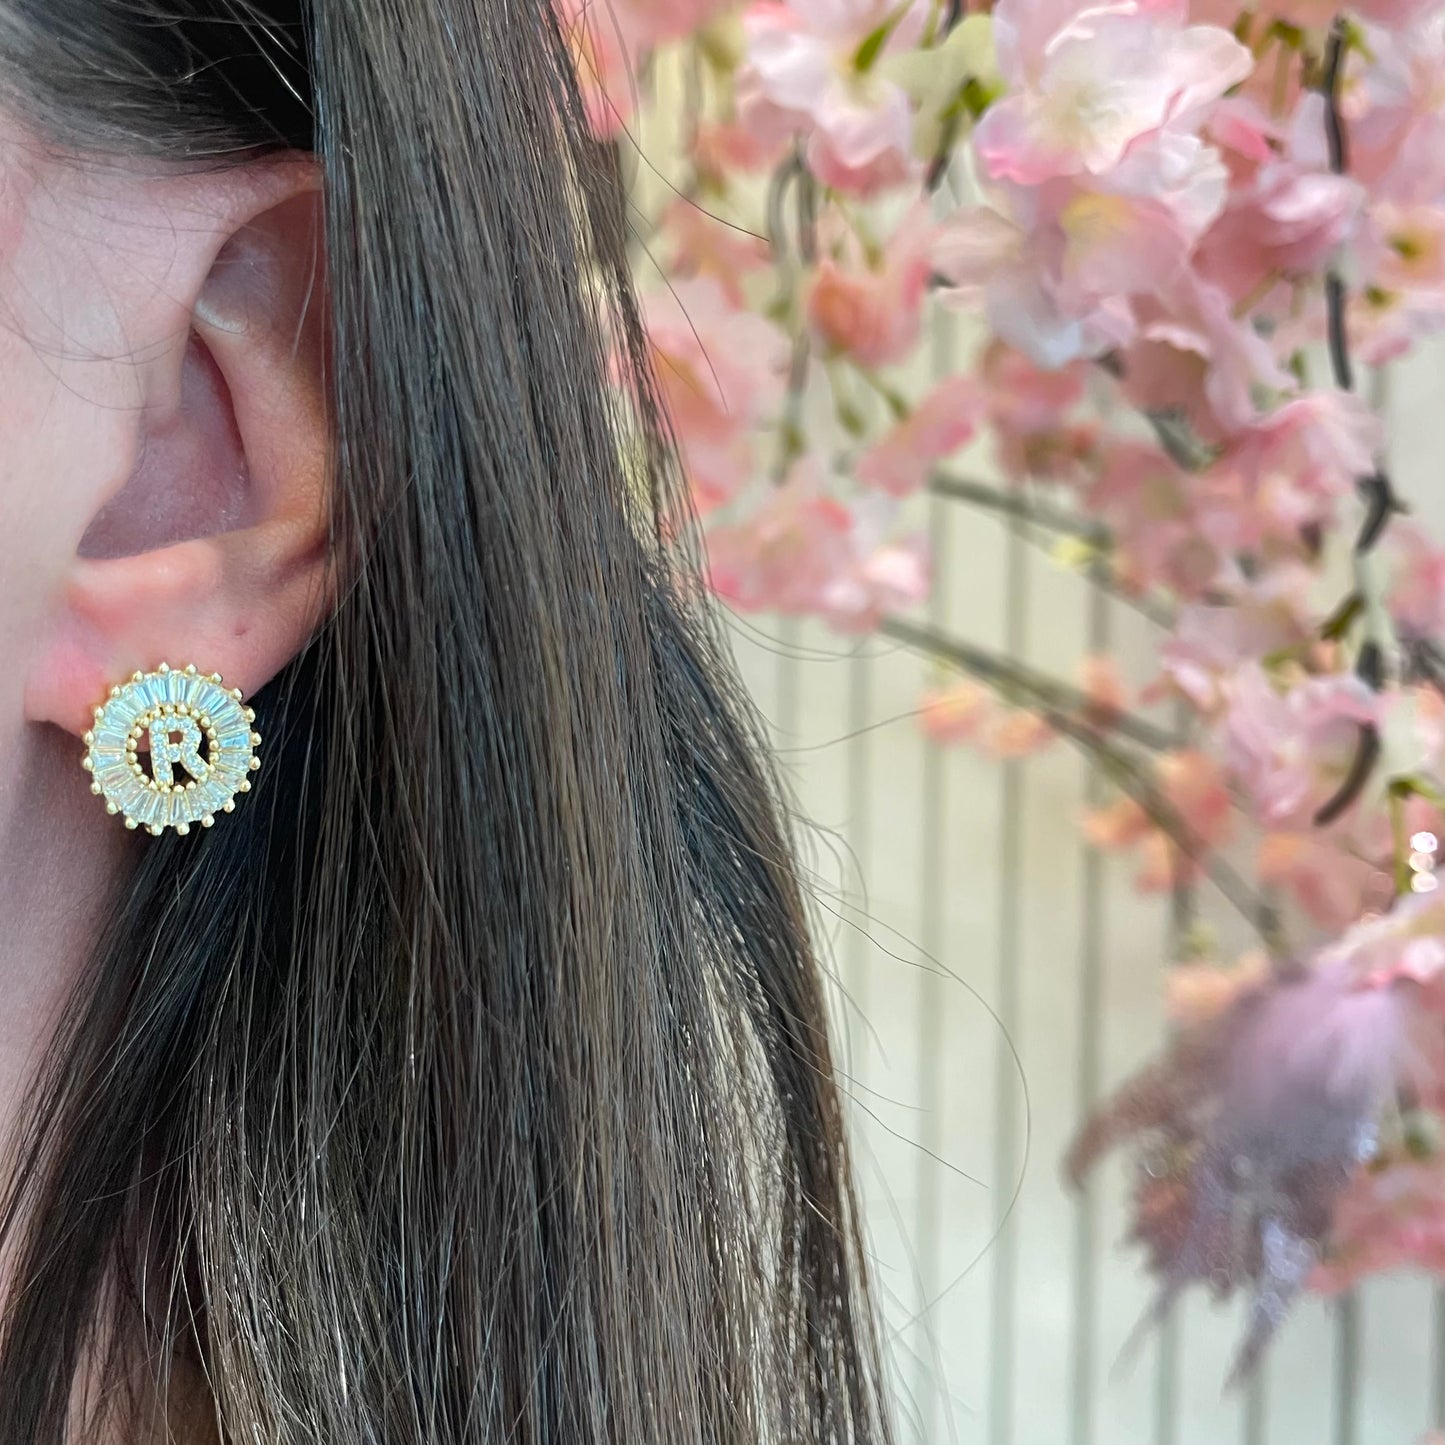 New Mandala Letter Earrings A - Z | 18K GOLD PLATED